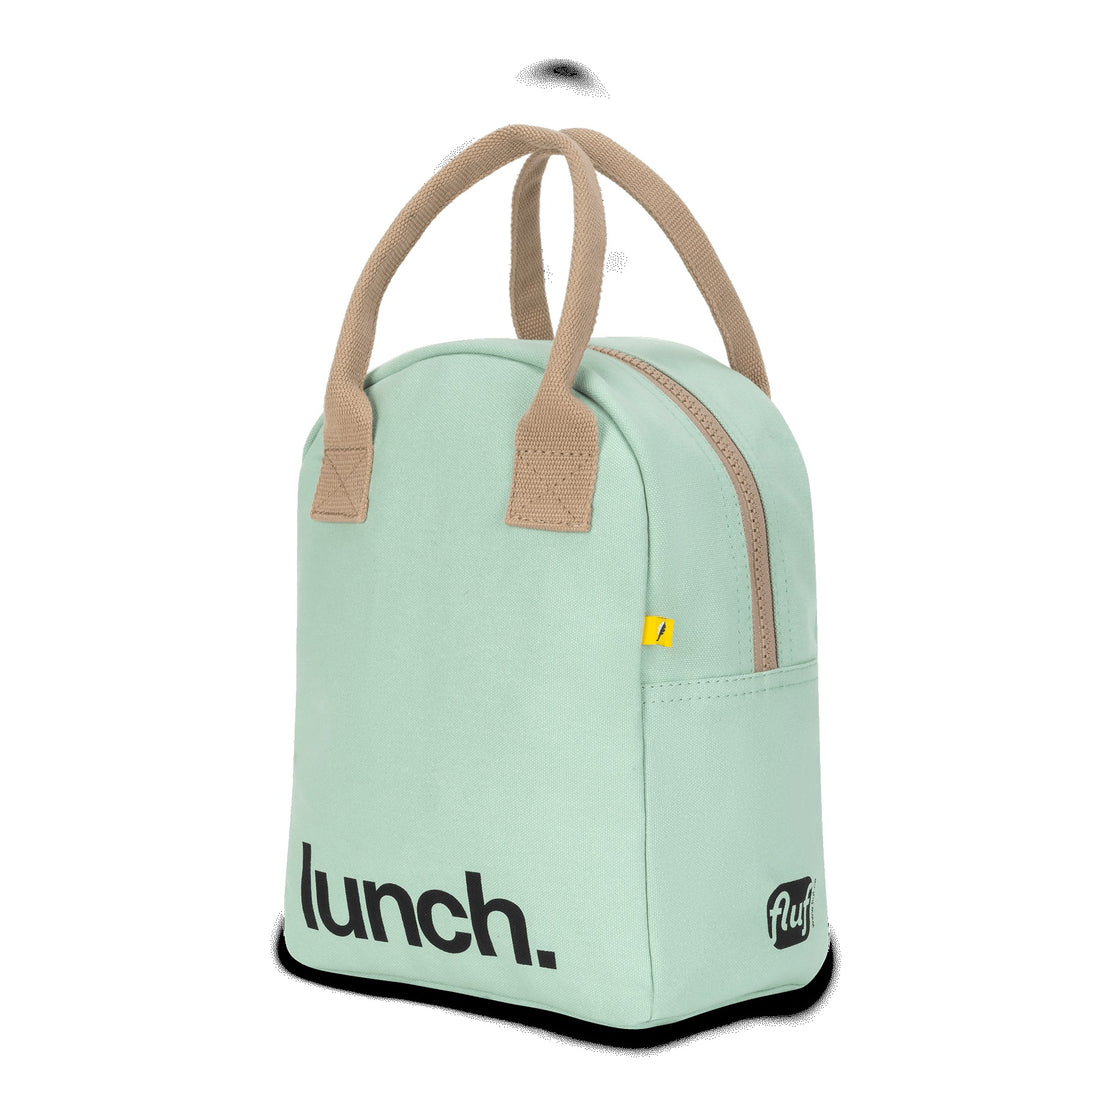 fluf-zipper-lunch-bag-mint-fluf-zlu-mint-27- (2)